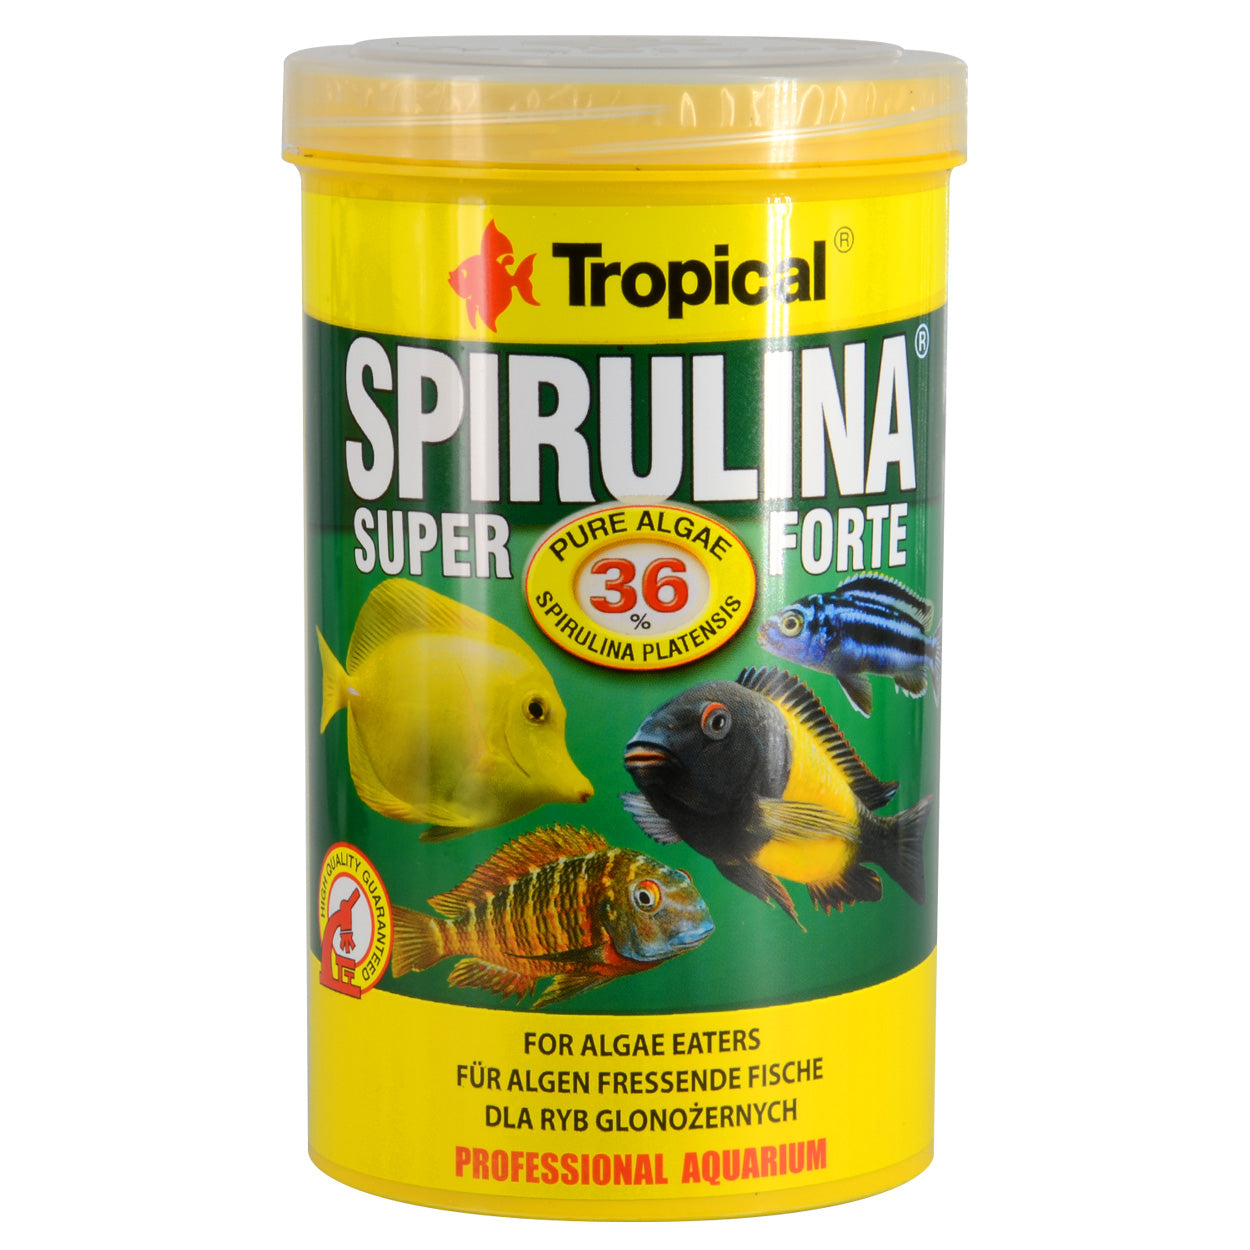 Super Spirulina Forte Vegetable Flakes